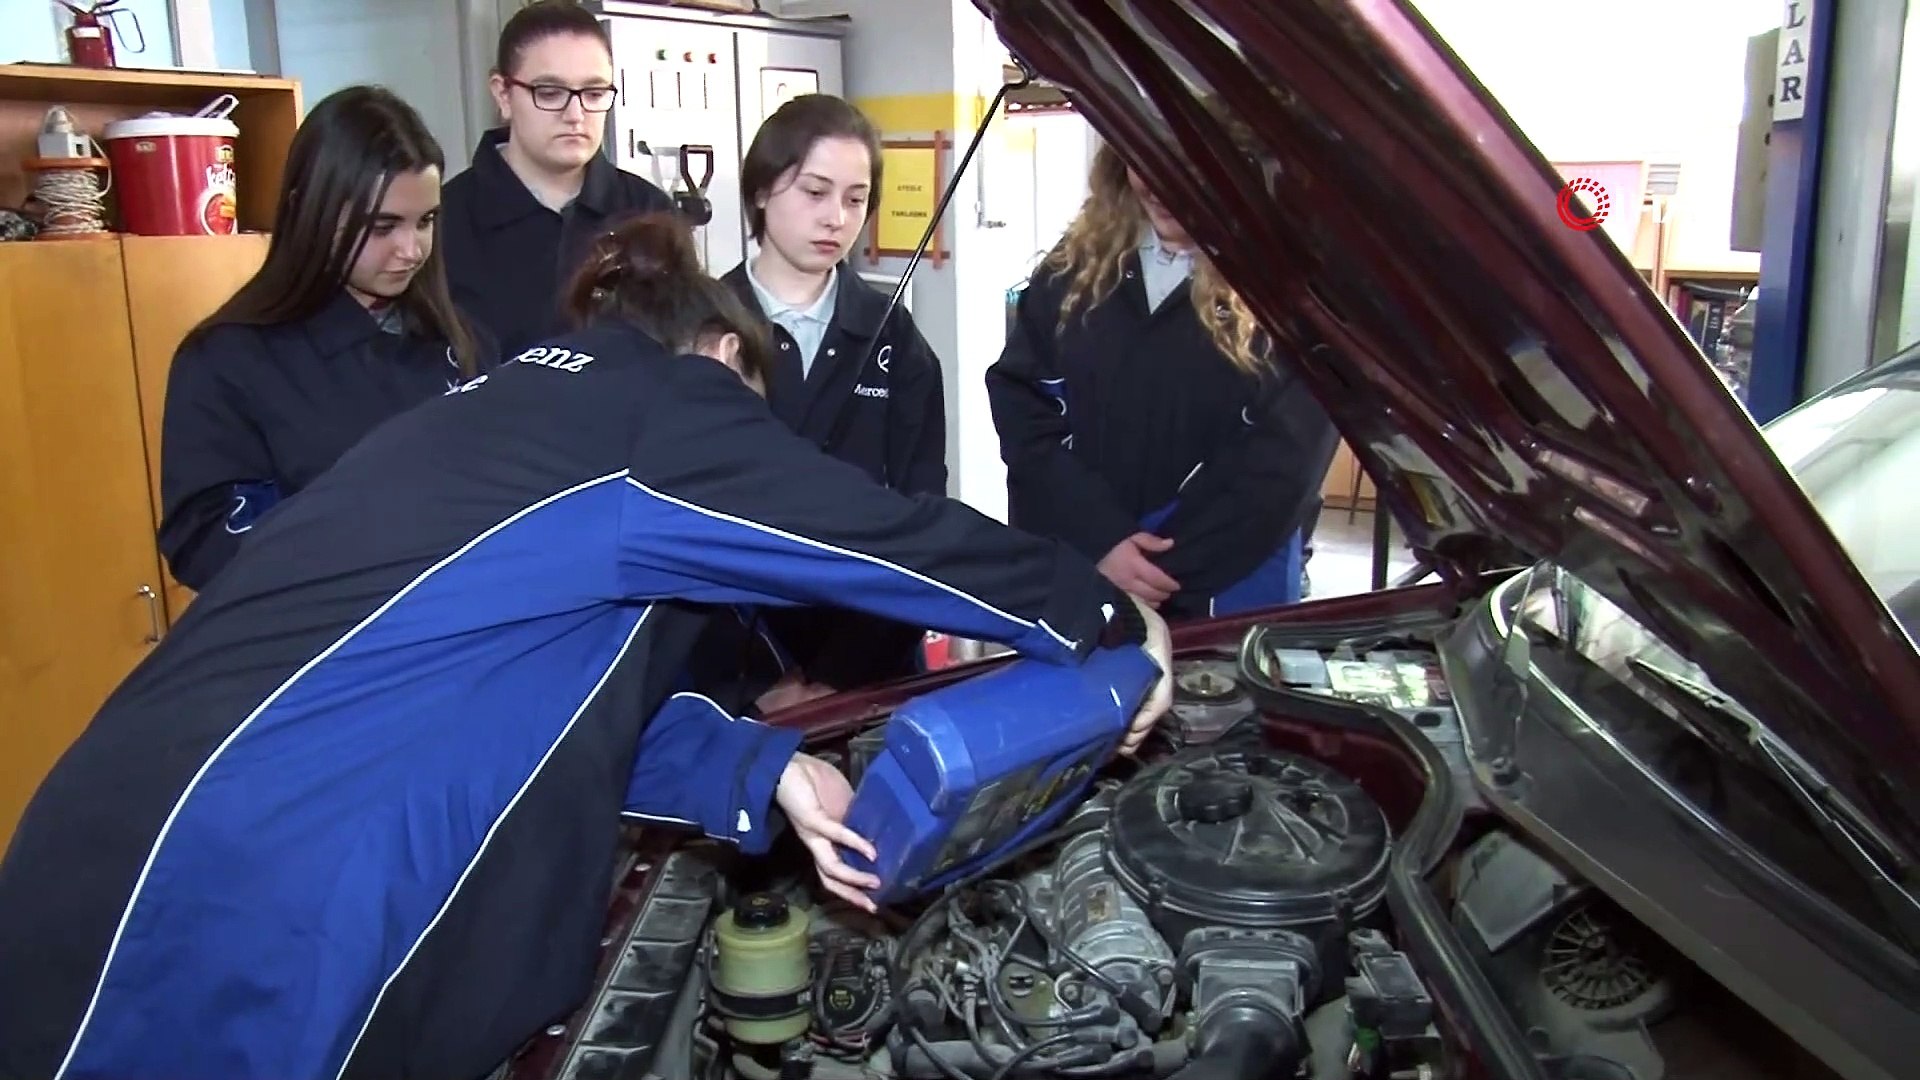 Bu lisede kız öğrenciler her türlü aracın bakımı, onarımı ve tamirini  yapıyor, erkekleri aratmıyor - Dailymotion Video